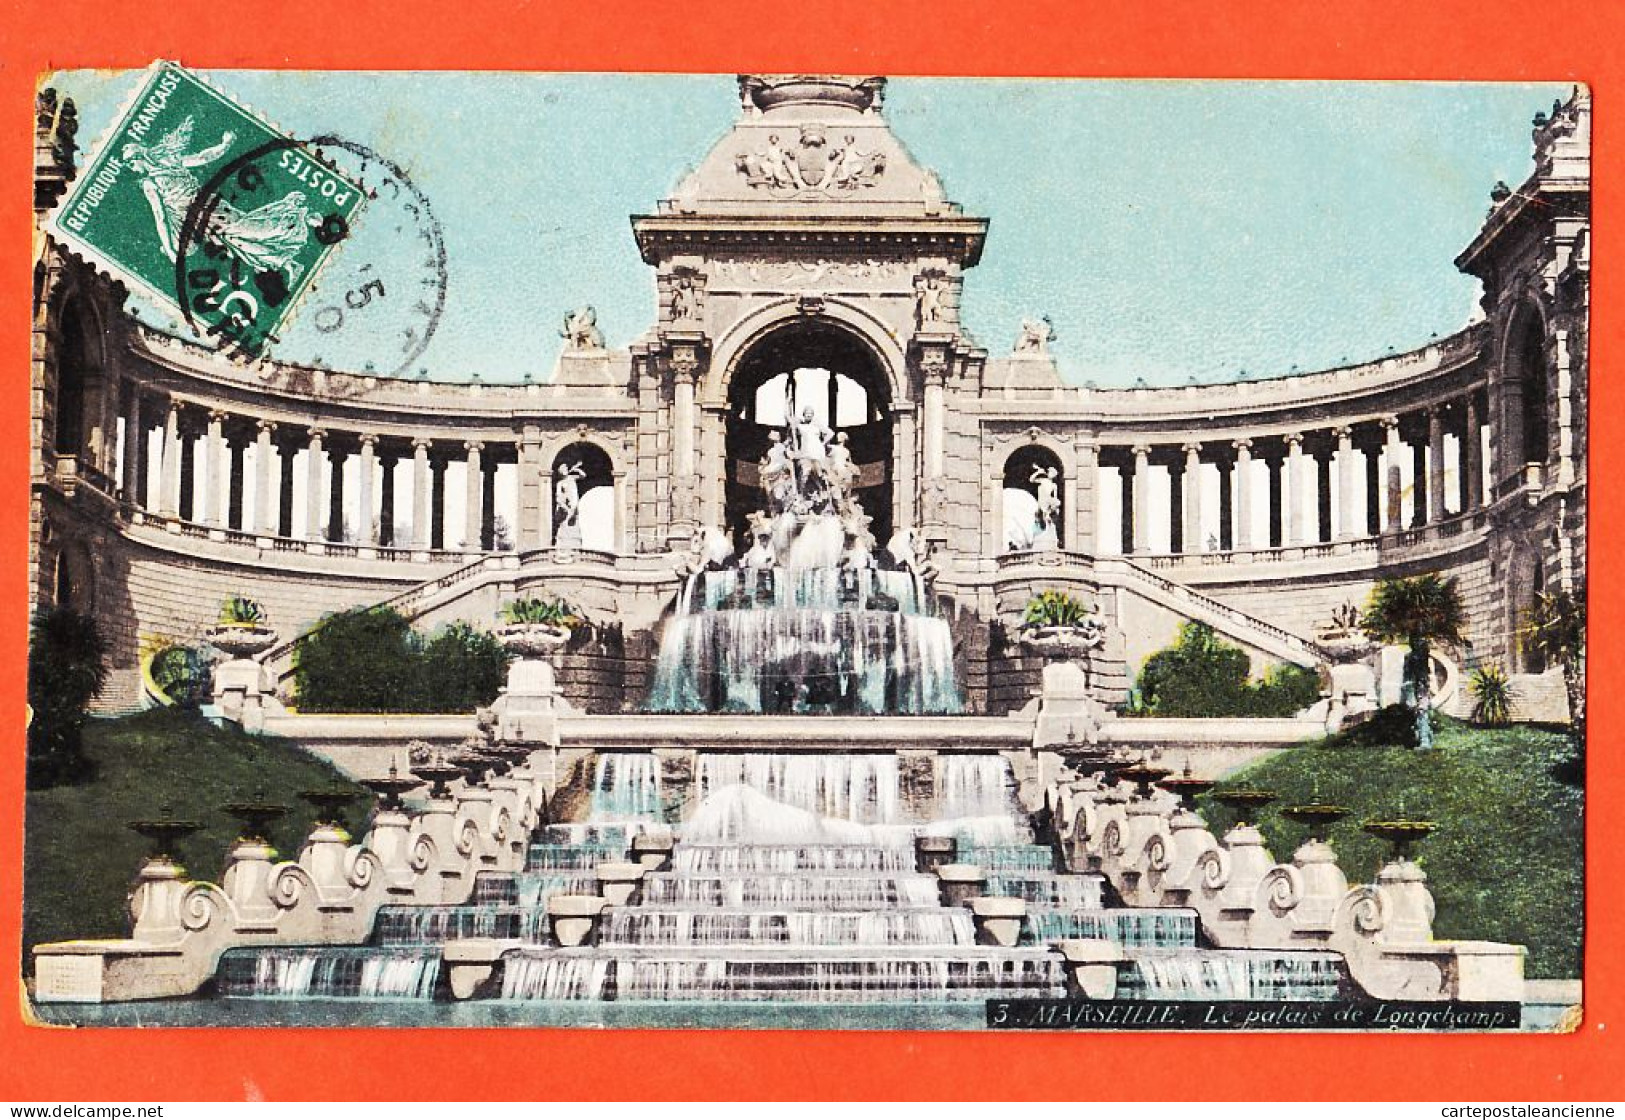 35018 / Aqua-Photo LEOPOLD VERGER 3 MARSEILLE (13) Palais LONGCHAMP 1909 à Honoré VILAREM Caporal 143e Inf - Canebière, Centre Ville